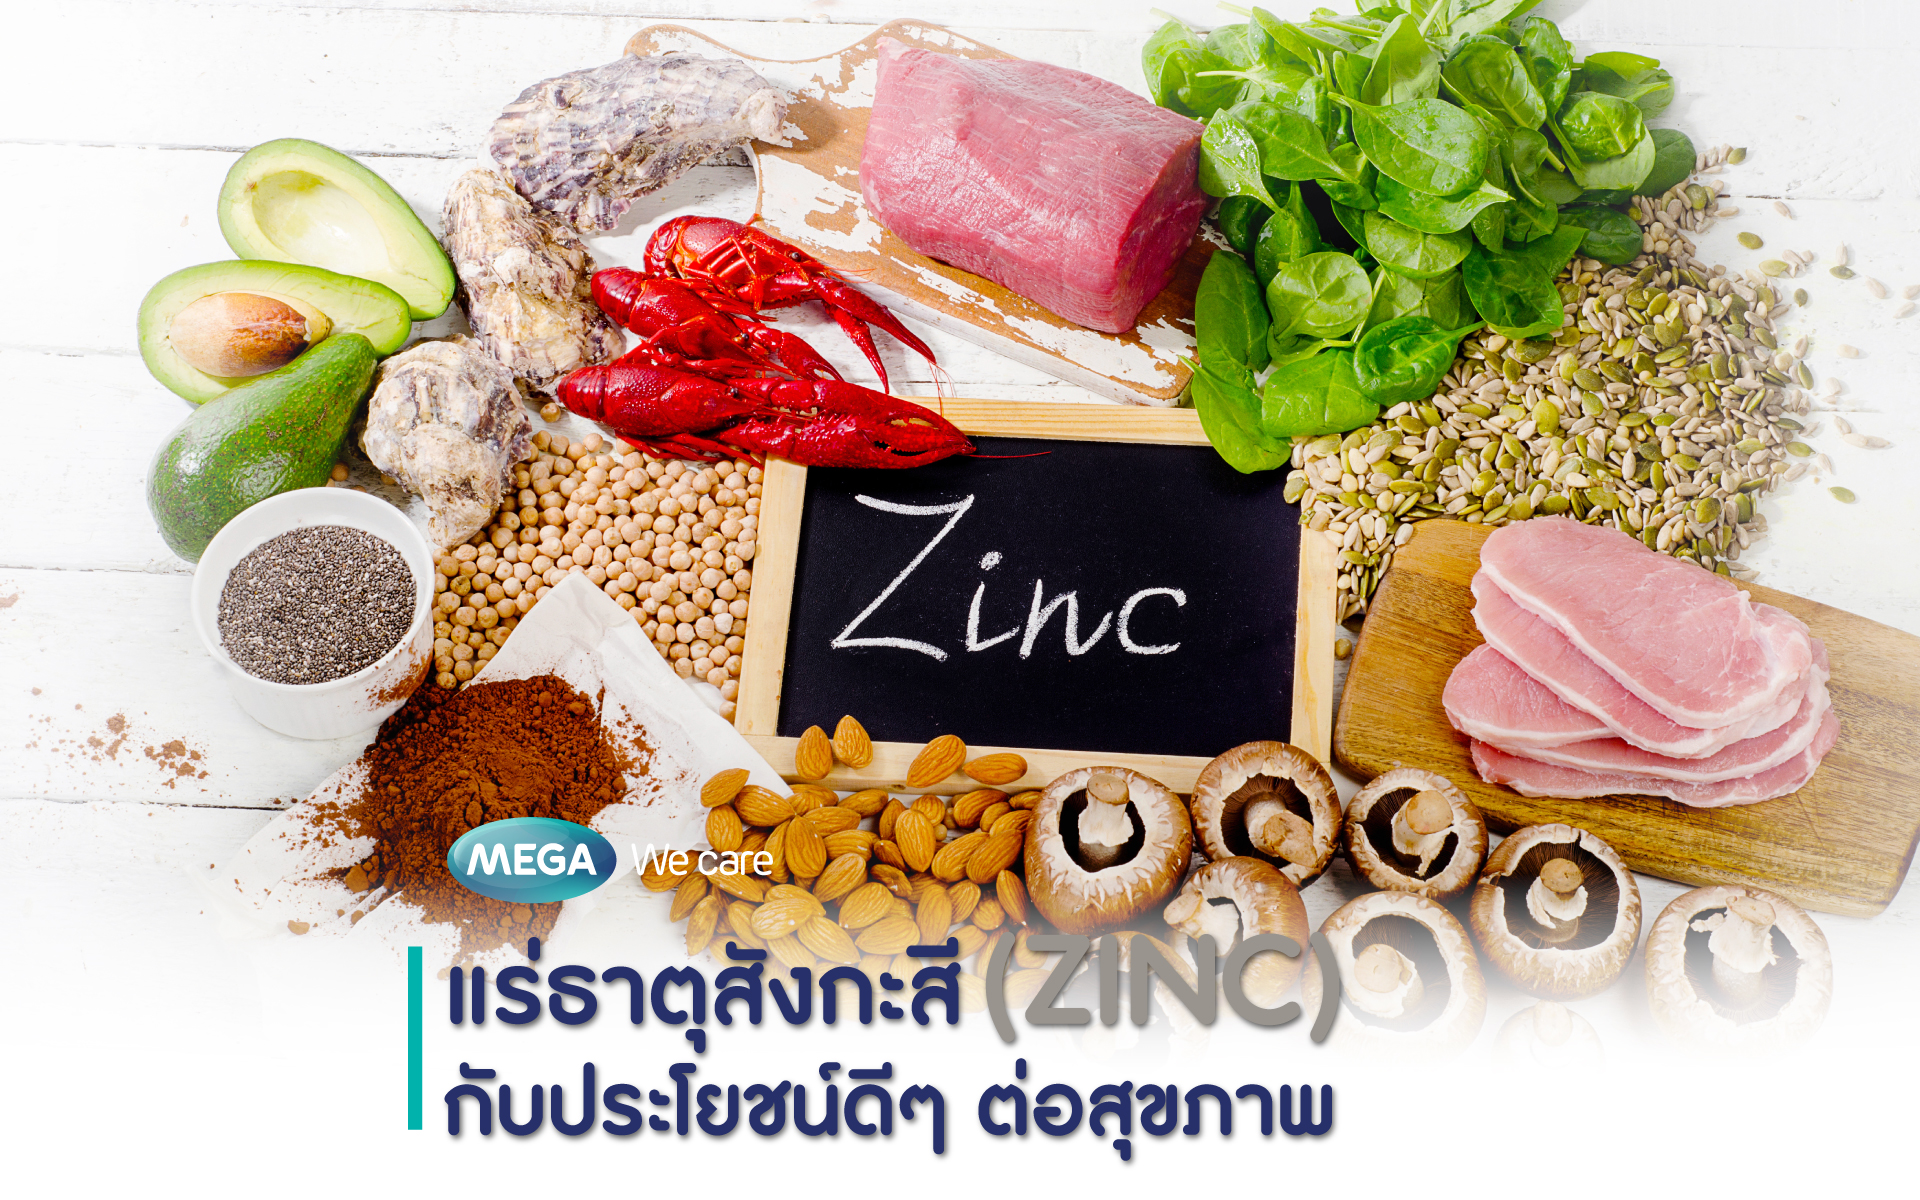 แร่ธาตุสังกะสี (Zinc) กับประโยชน์ดีๆต่อสุขภาพ